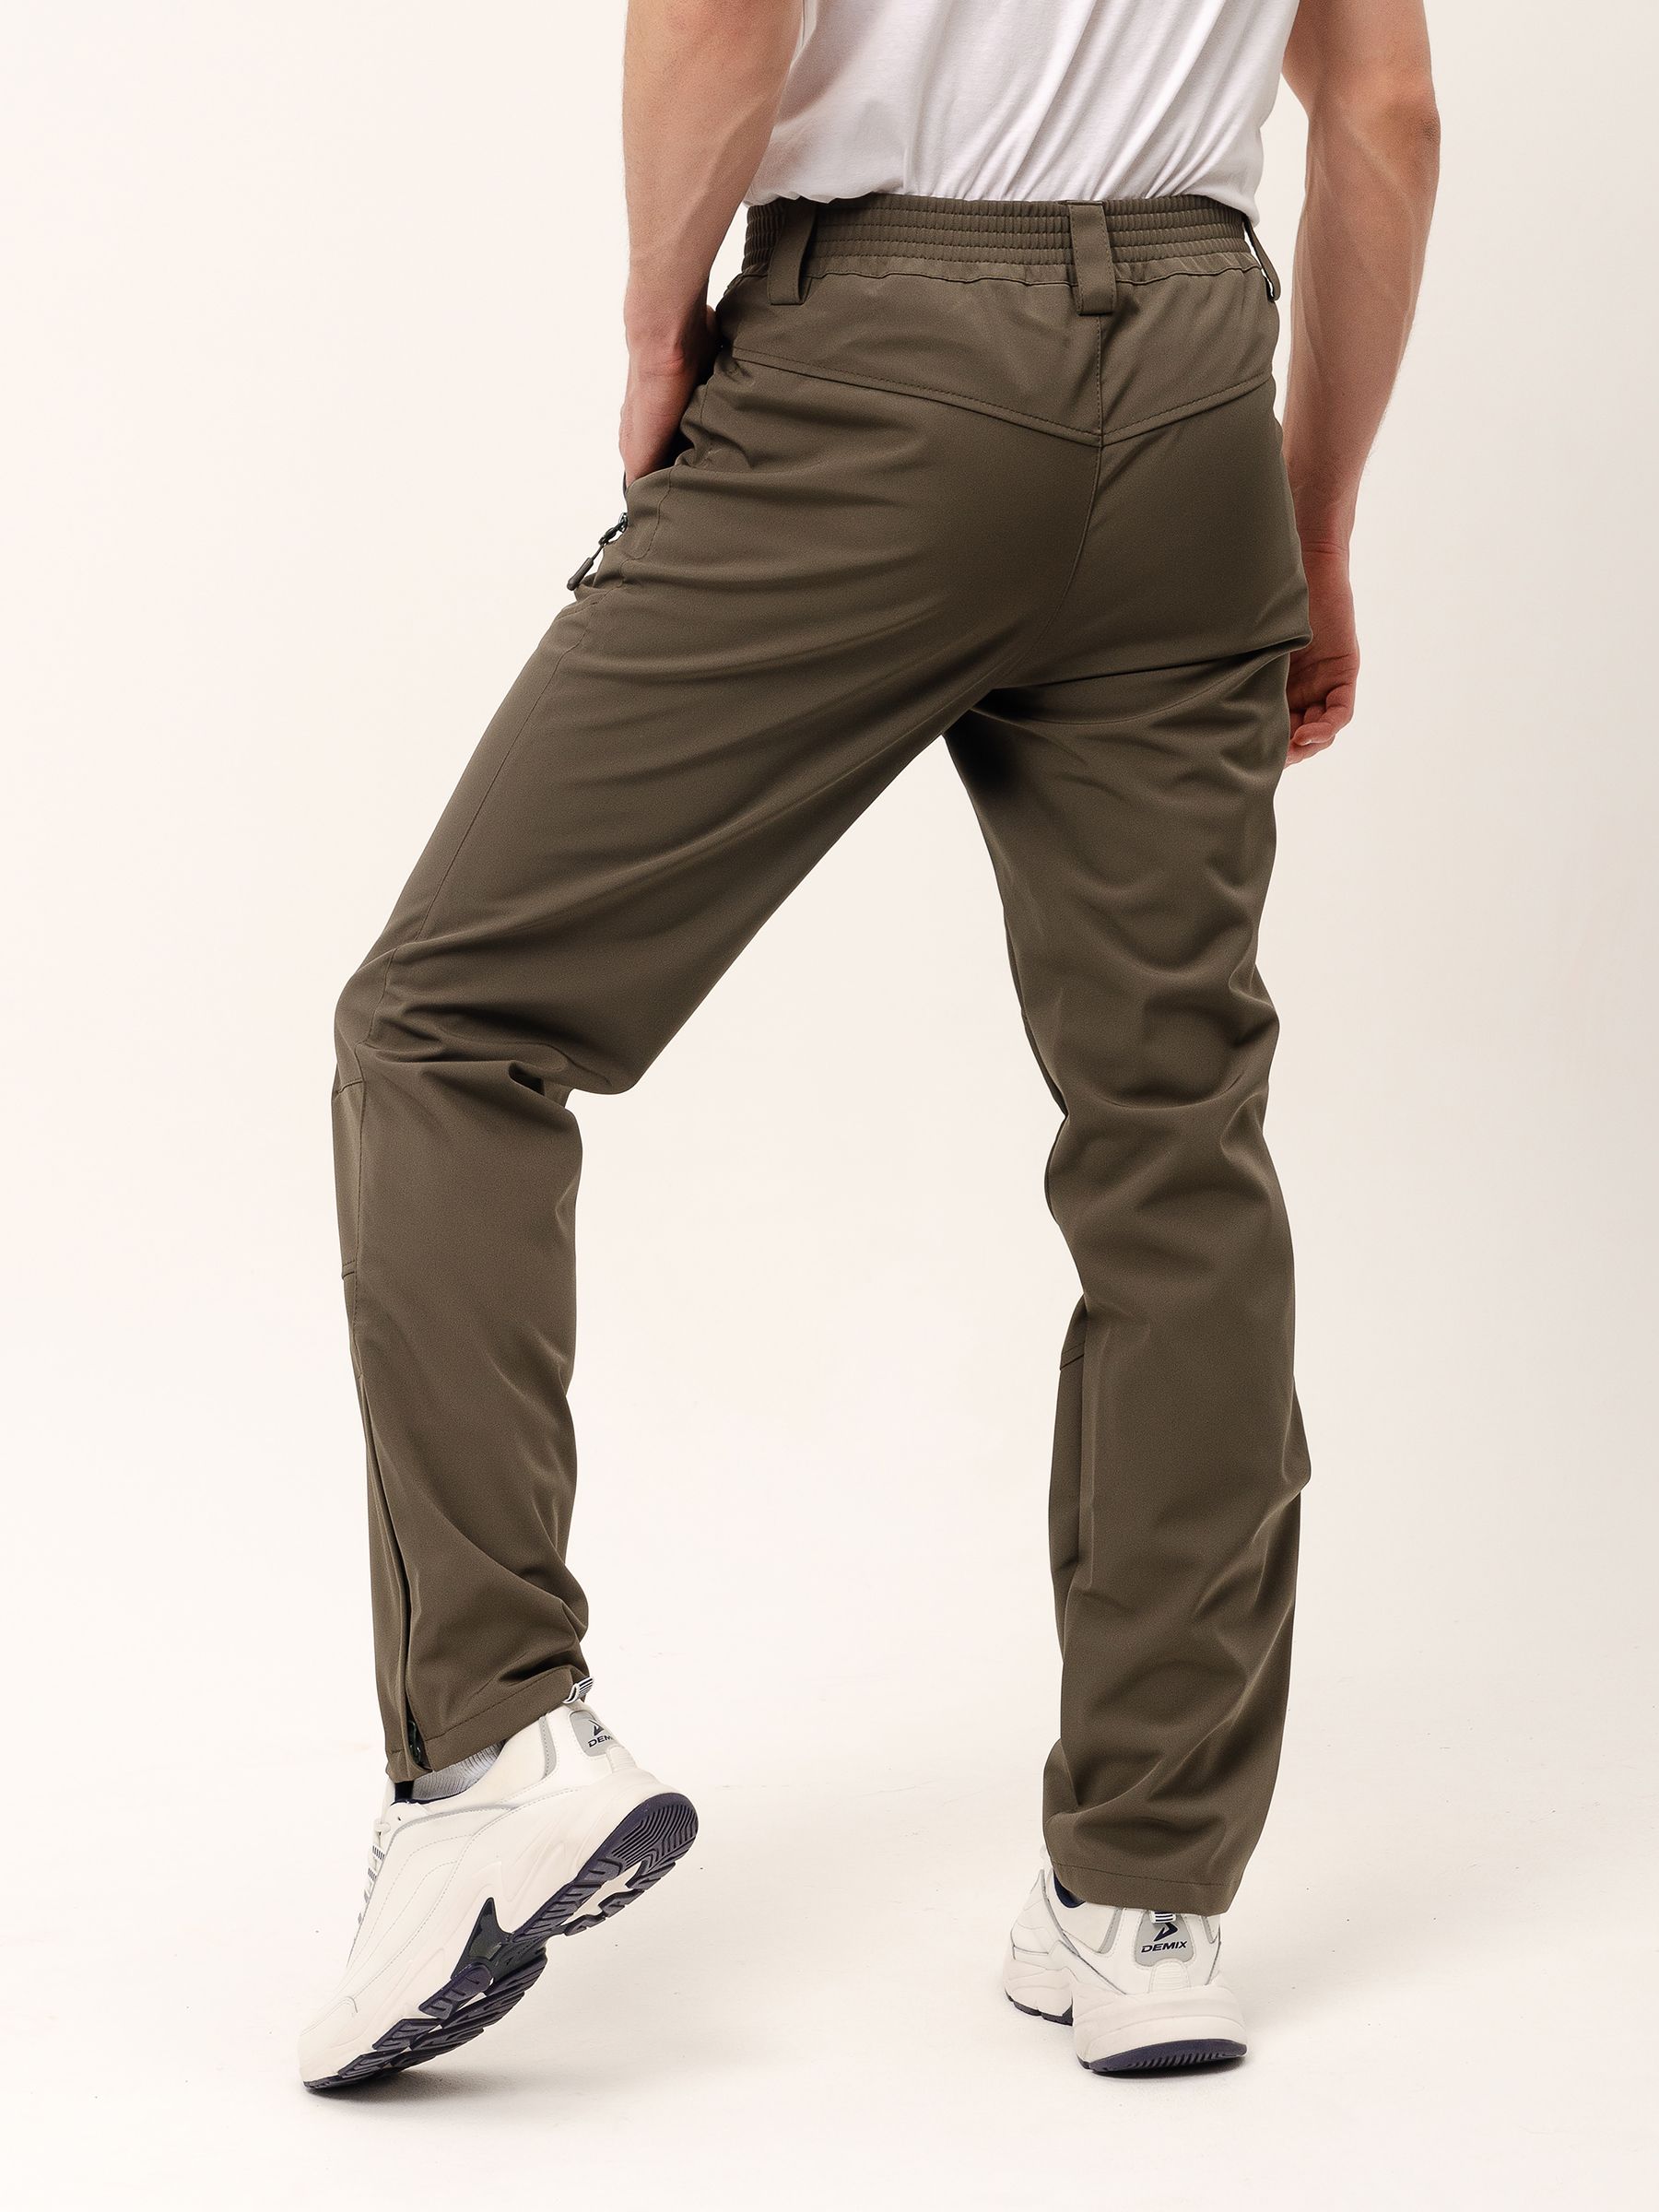 Демисезонные мужские мембранные брюки Софтшелл, цвет светлый хаки измембранной ткани